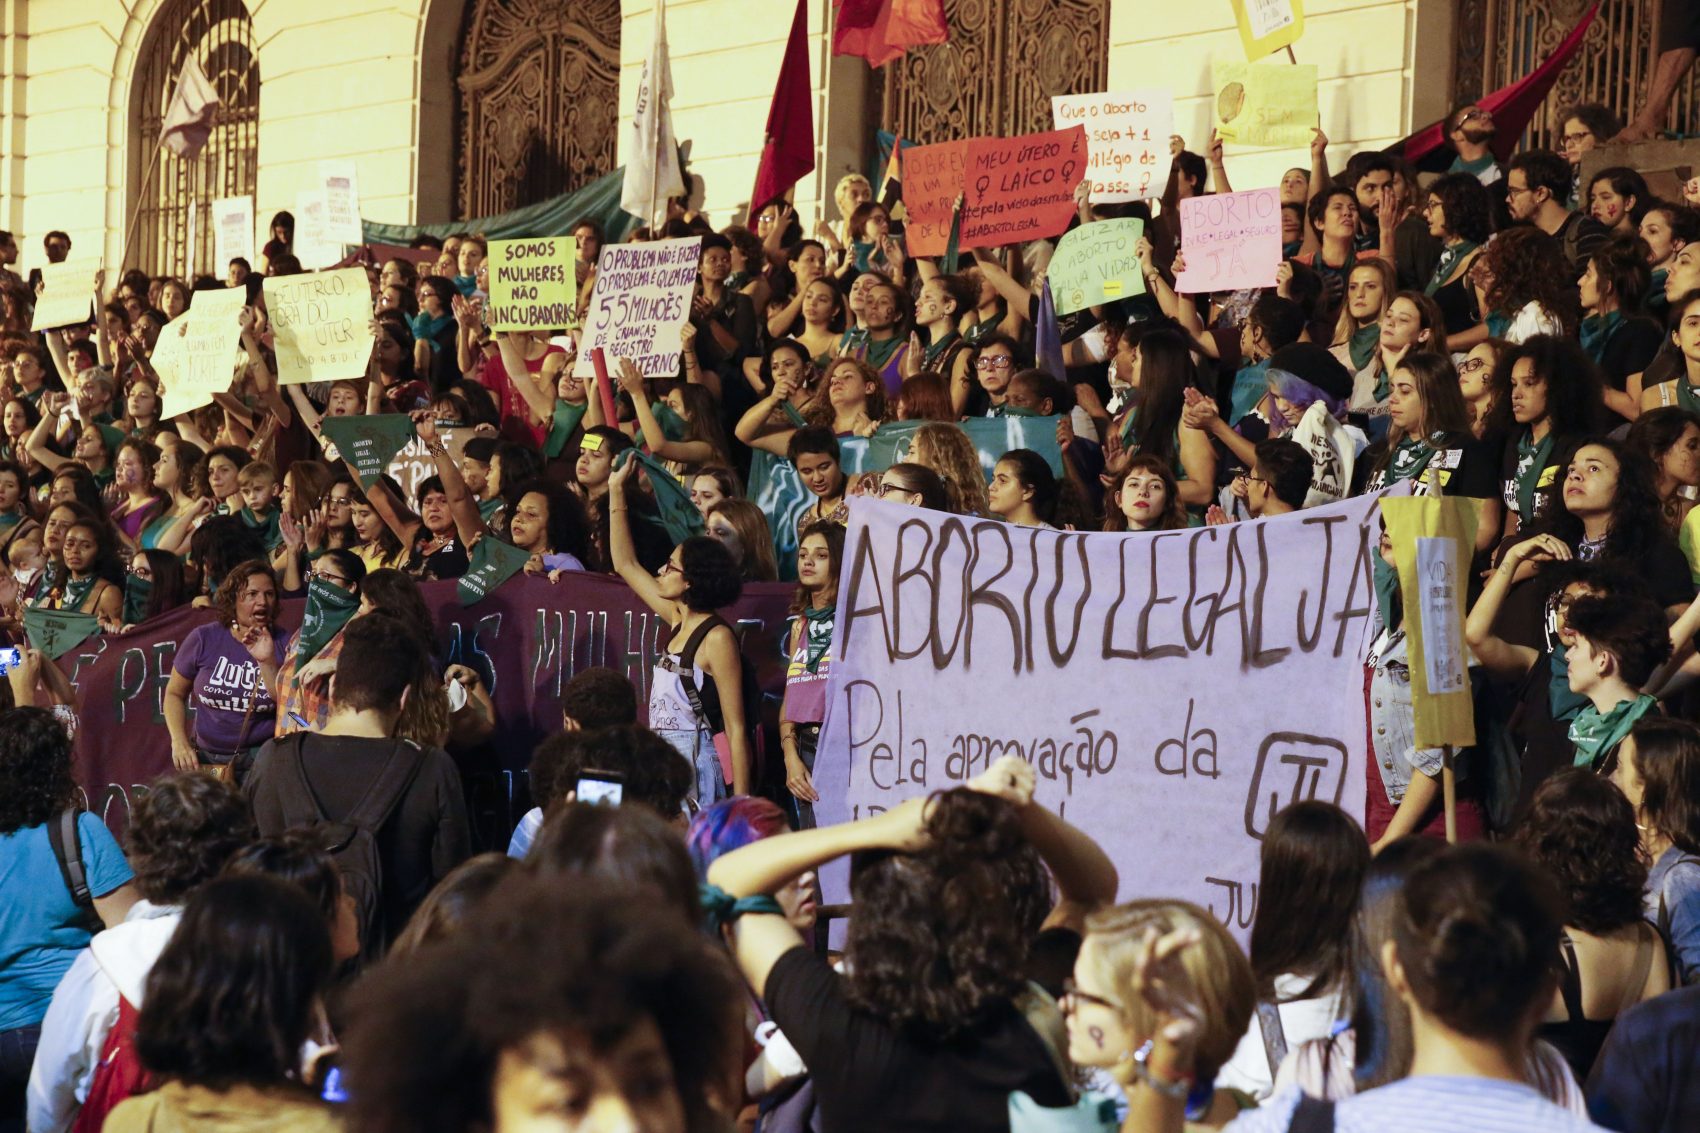 "Criminalizar o aborto representa que estamos fracassando enquanto Estado no cuidado e atenção à saúde e aos direitos reprodutivos das mulheres brasileiras"